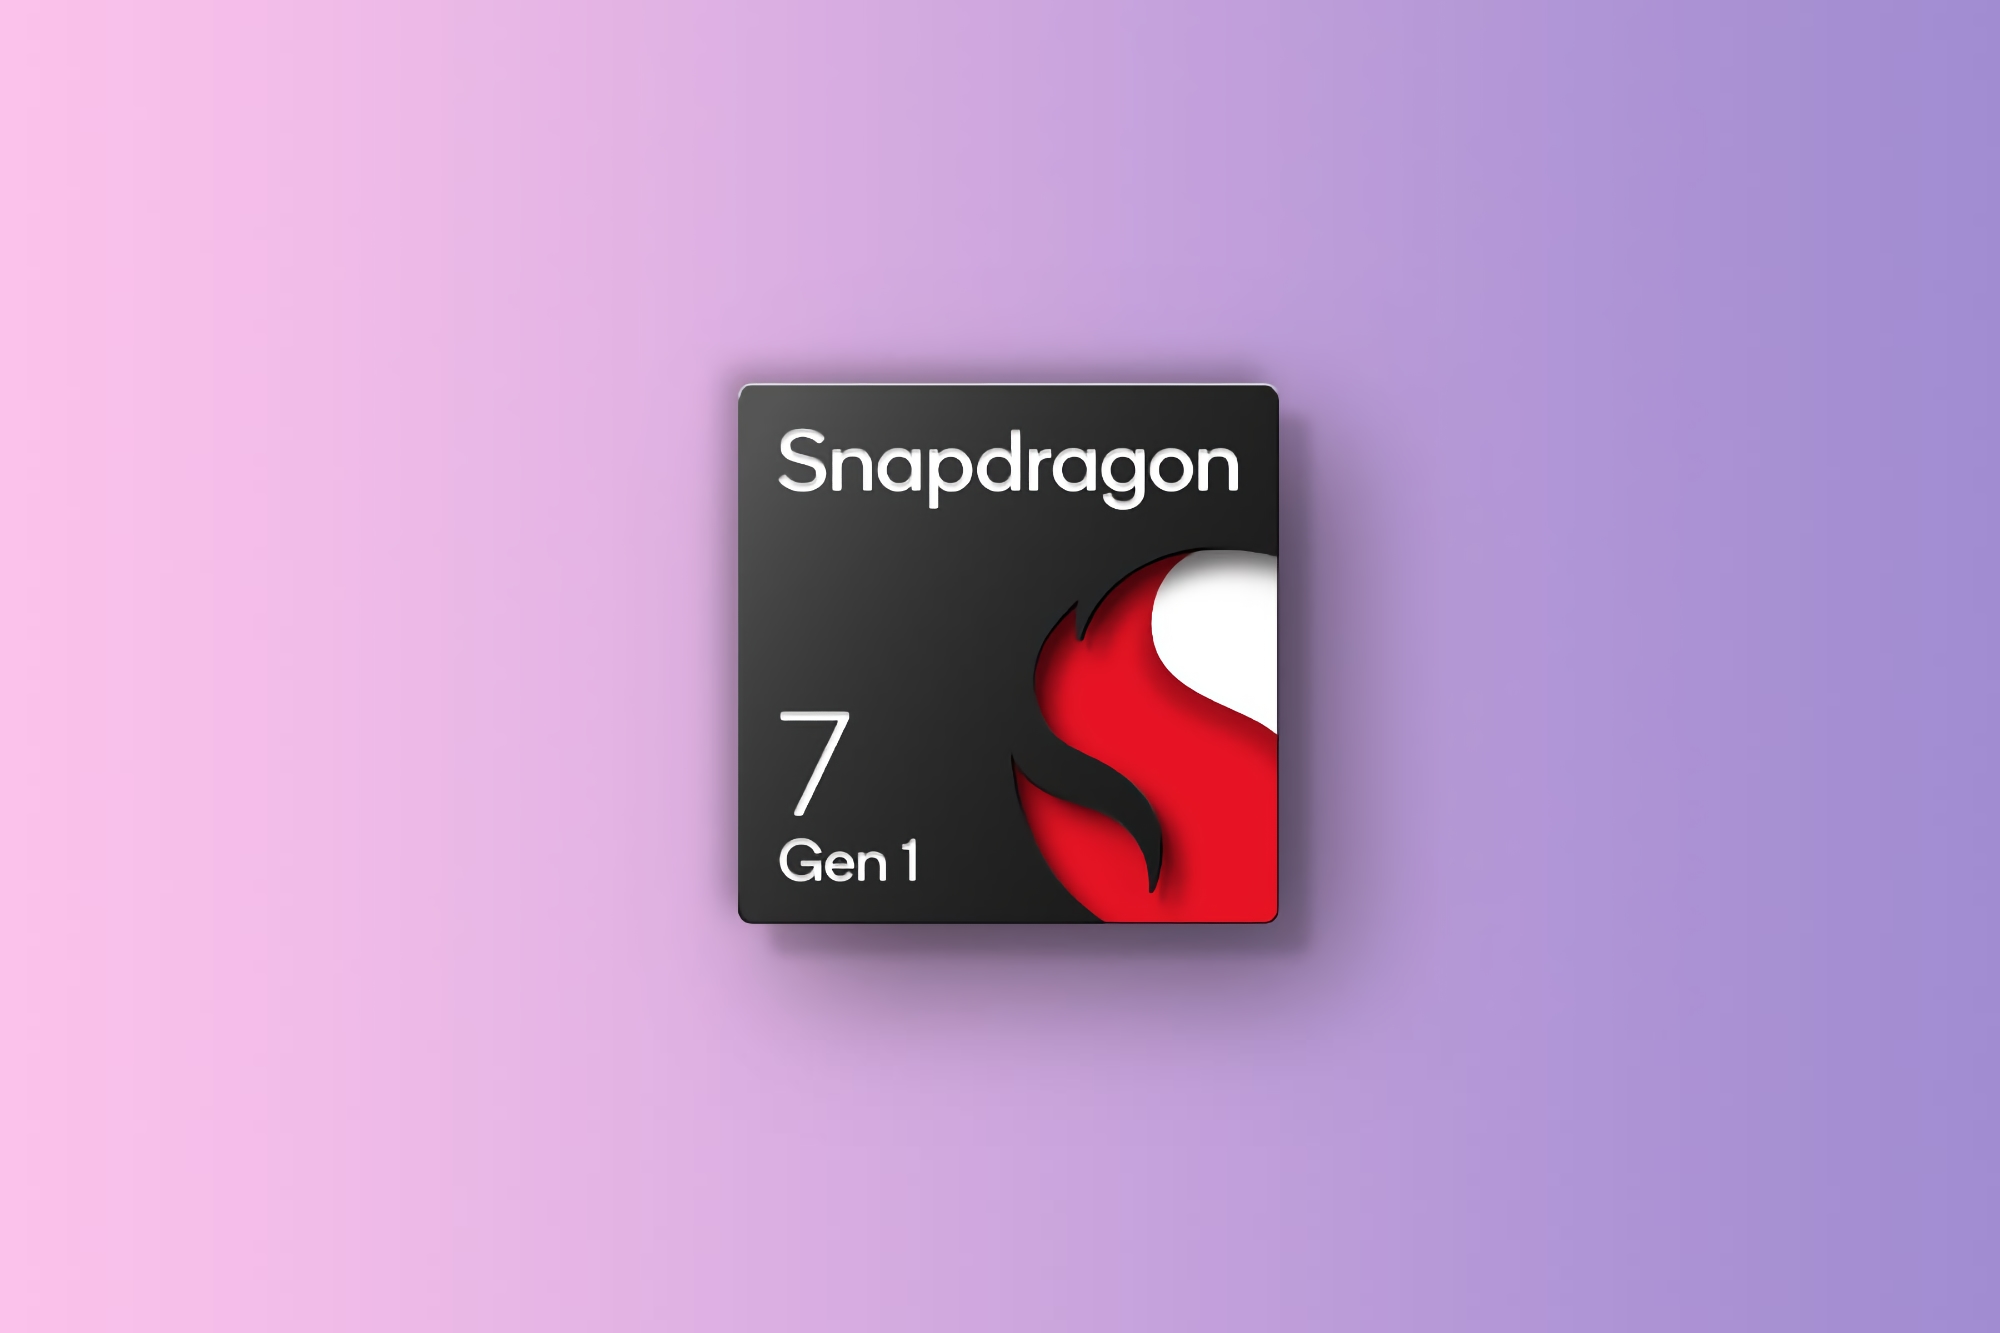 Snapdragon 7 Gen 1-Nachfolger: Qualcomm arbeitet an neuem Chip der Snapdragon 7-Serie mit Tri-Cluster-Kernstruktur und 2,4 GHz